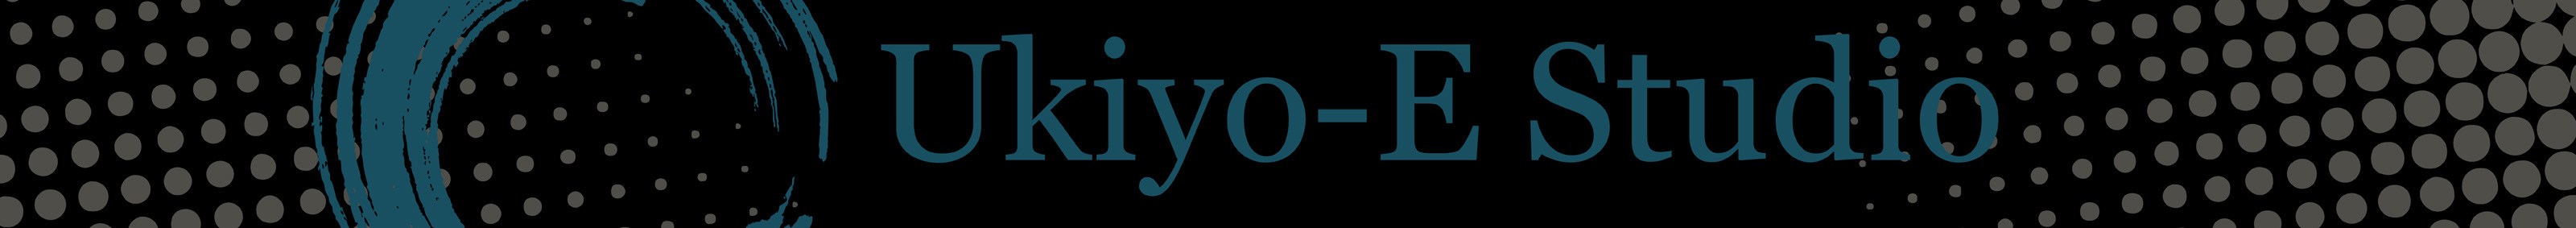 Ukiyo-E Studio profil başlığı